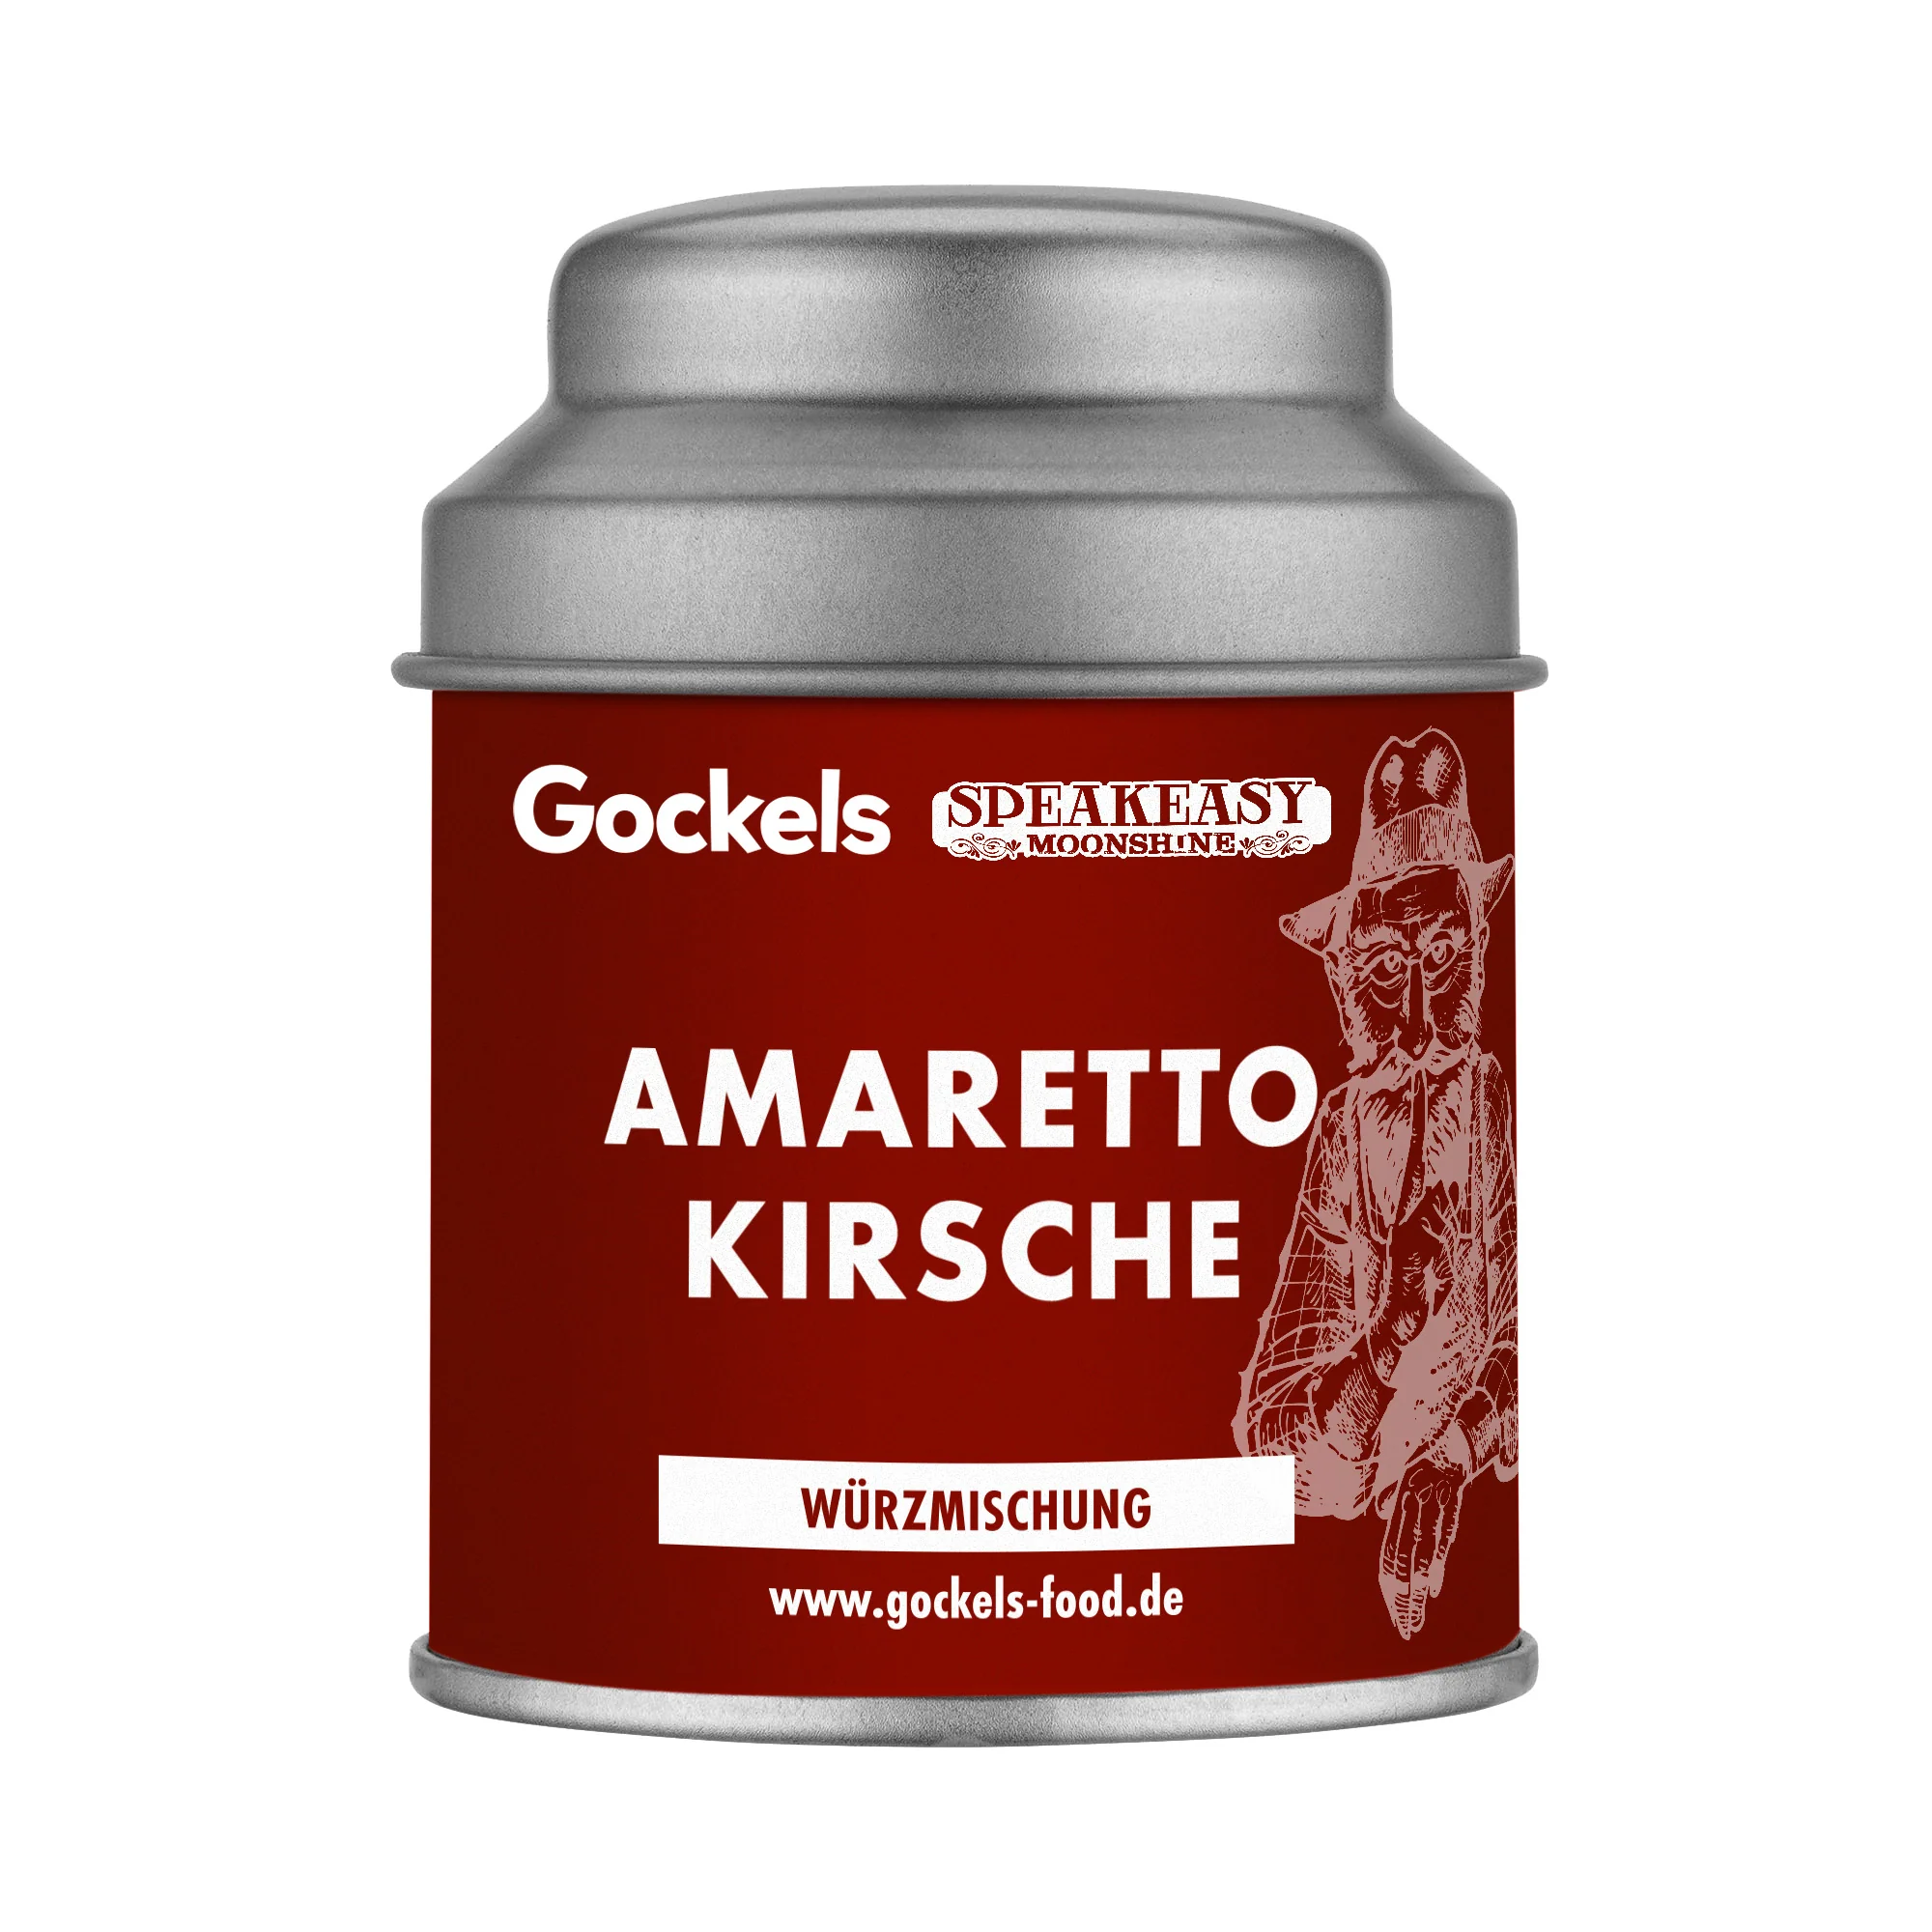 Amaretto Kirsche